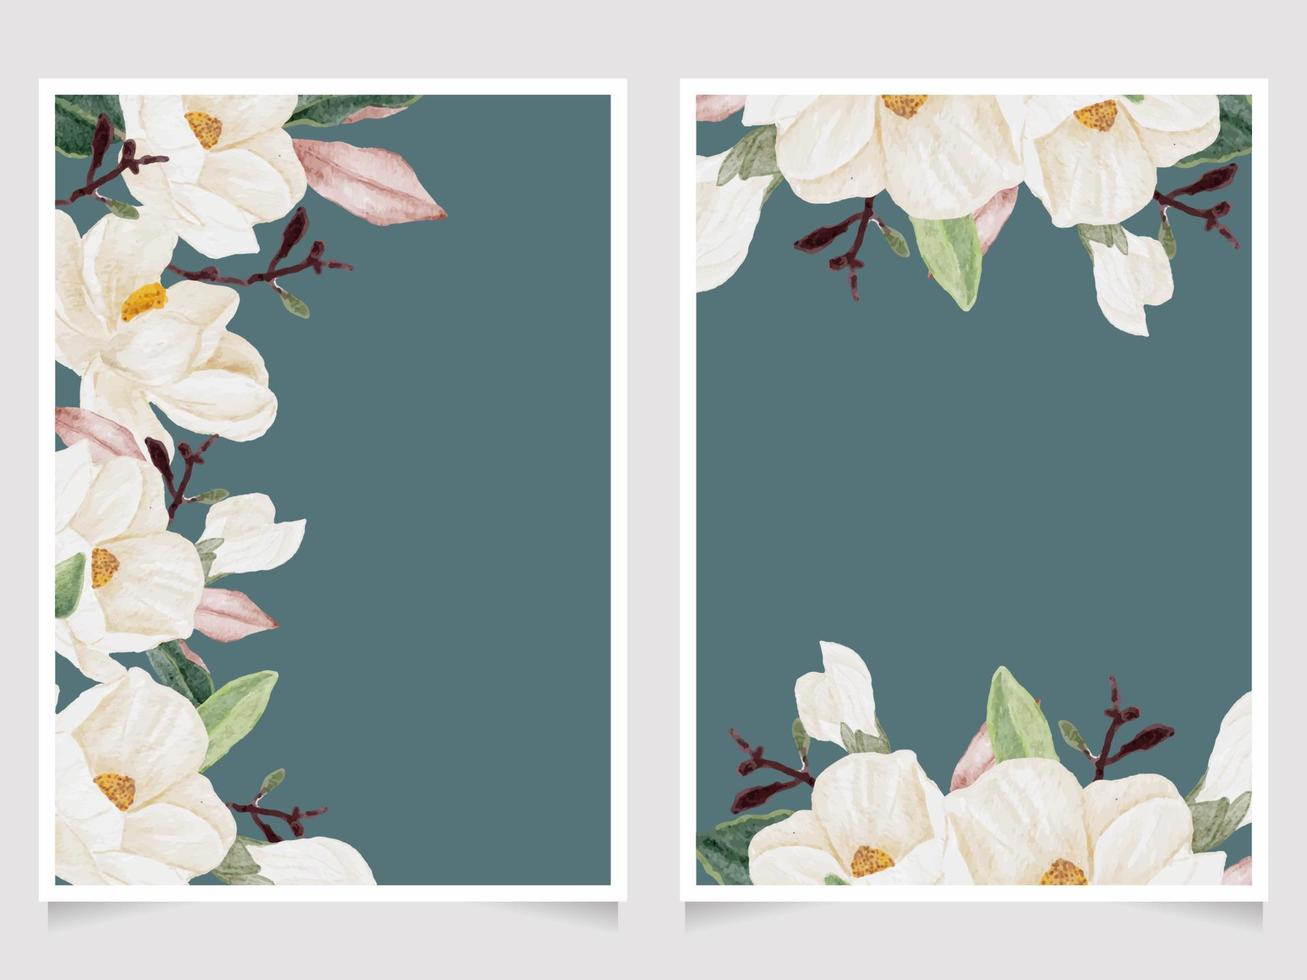 raccolta del modello della carta dell'invito di nozze del mazzo del ramo della foglia del fiore della magnolia bianca disegnata a mano dell'acquerello vettore